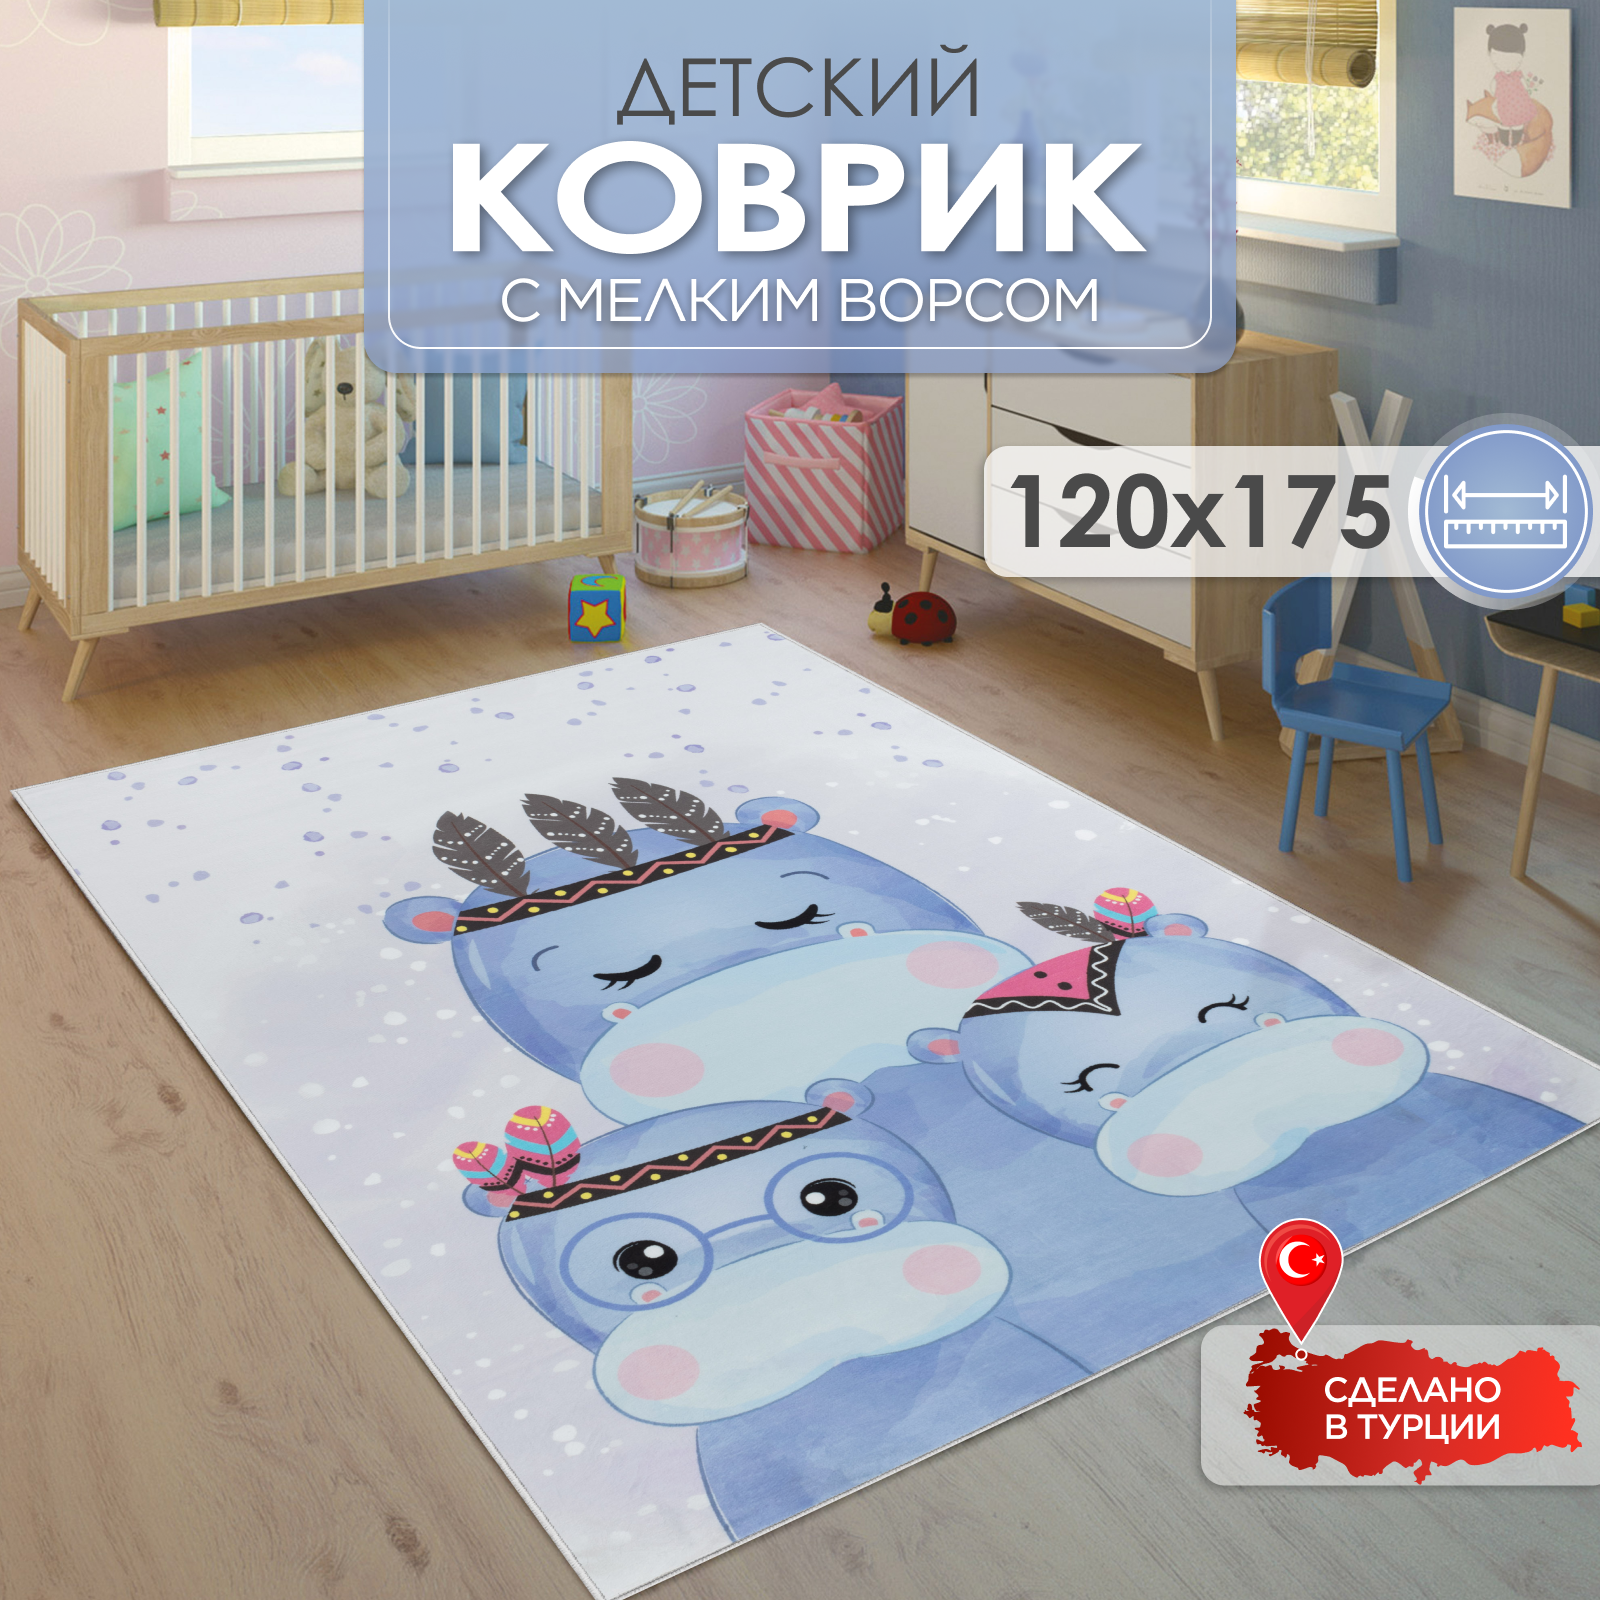 Ковер комнатный детский KOVRIKANA голубой сиреневый белый бегемот 120см на 175см - фото 1